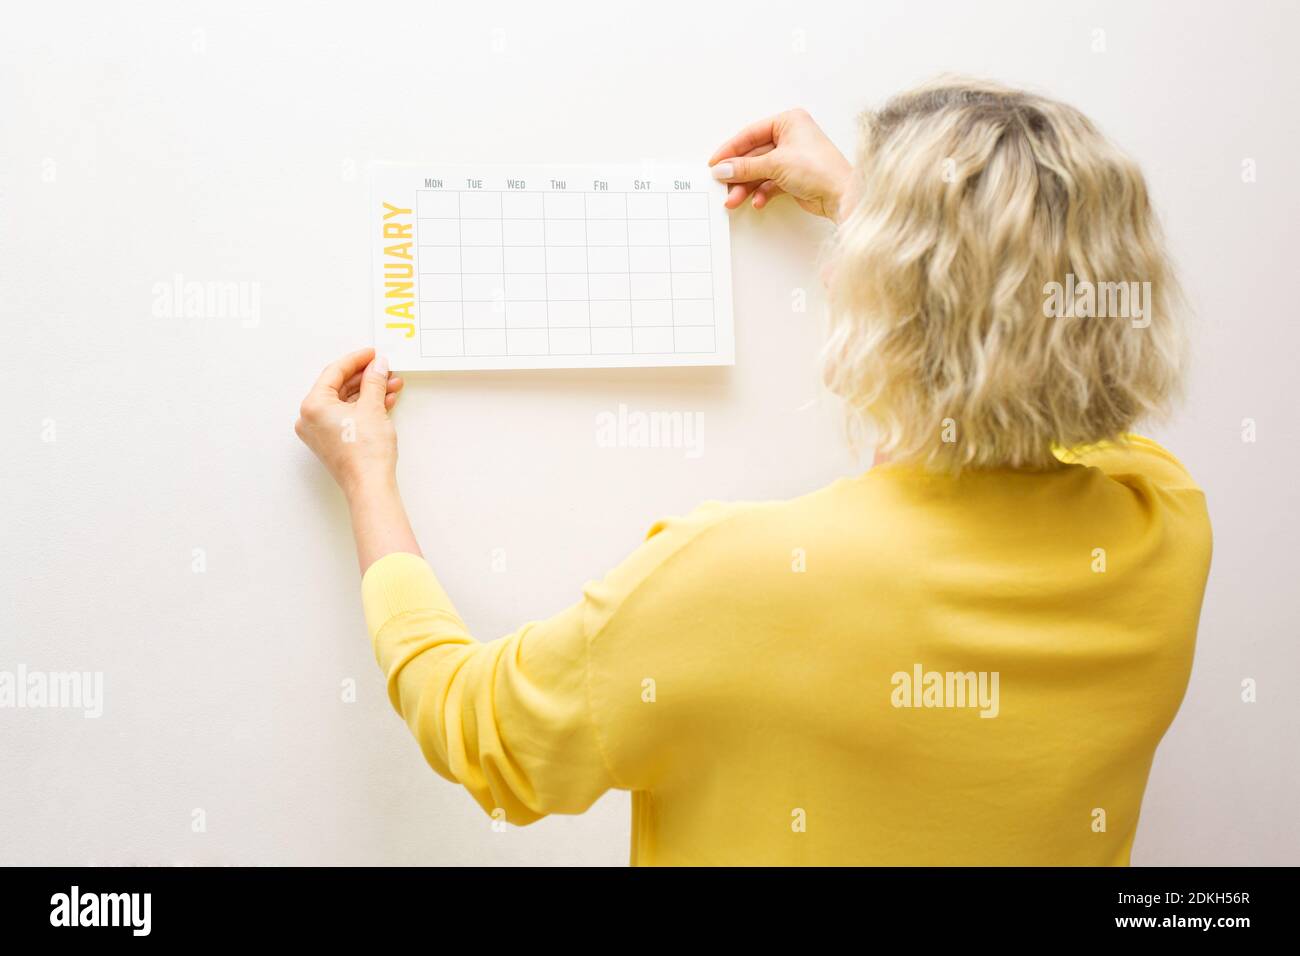 La mano de una mujer cuelga un nuevo calendario para enero.objetivo, acción, estrategia, decisión, éxito de negocio concepto.concepto mínimo Foto de stock